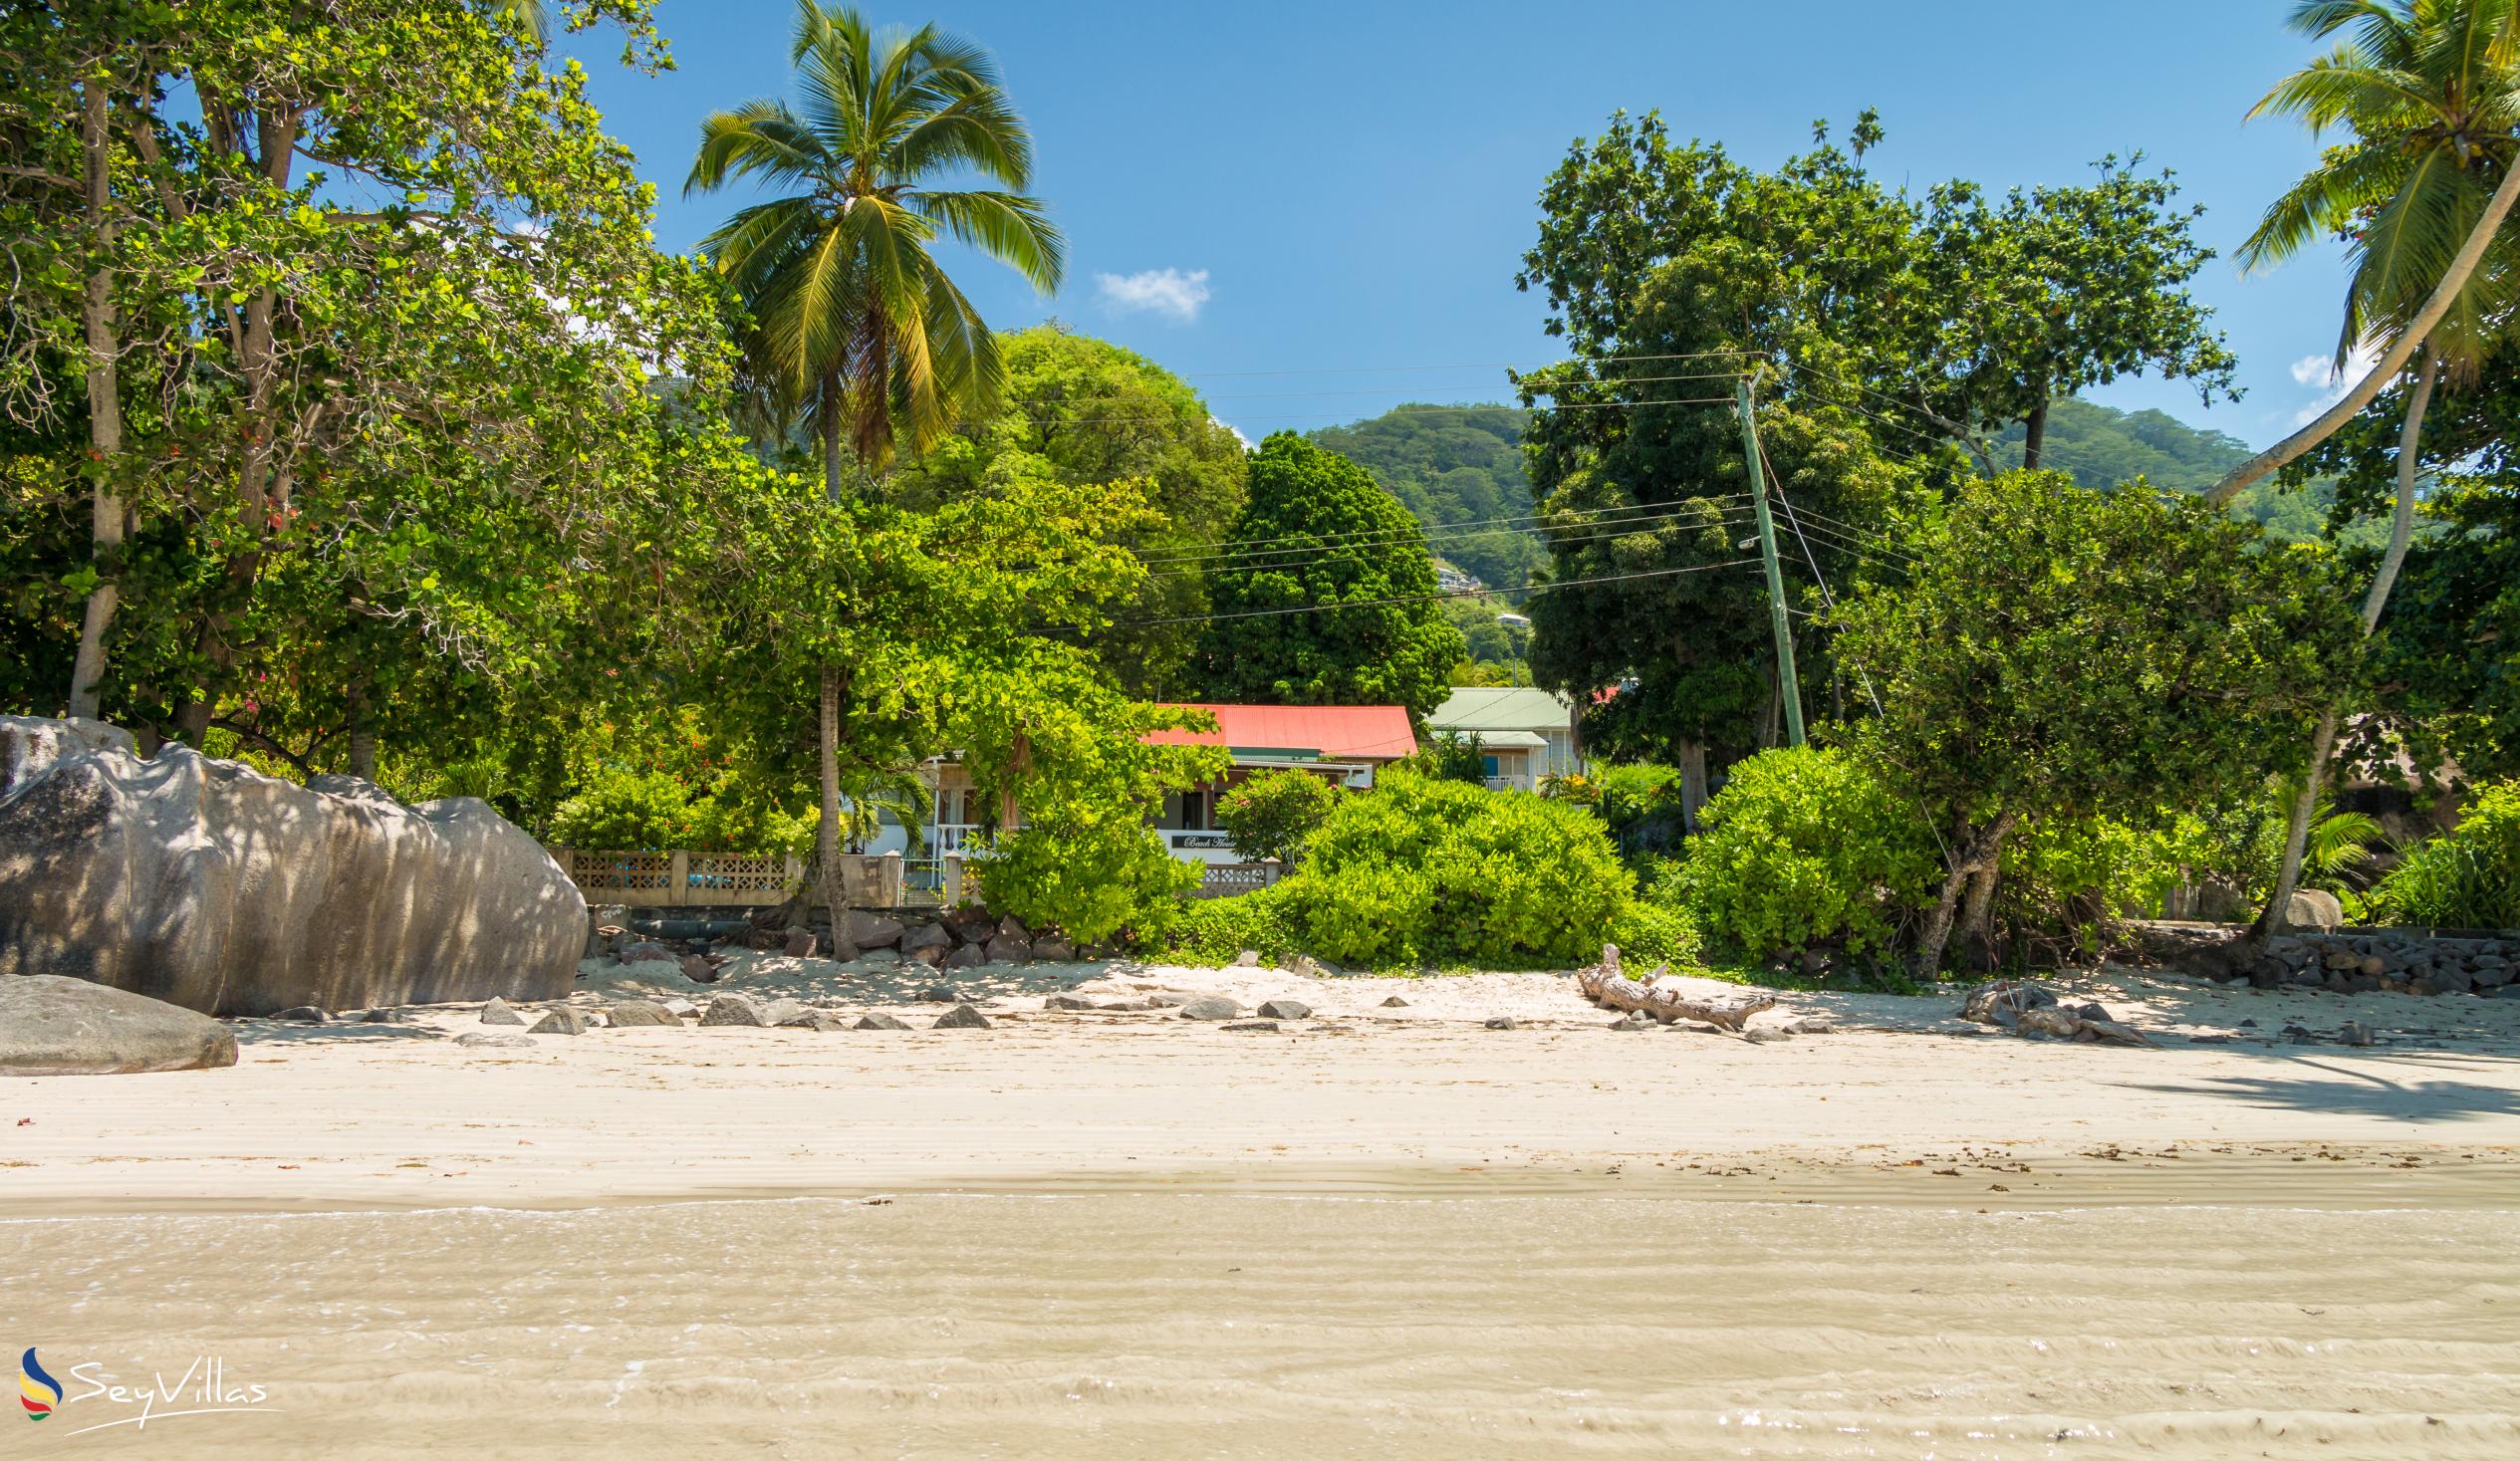 Foto 15: The Beach House - Location - Mahé (Seychelles)